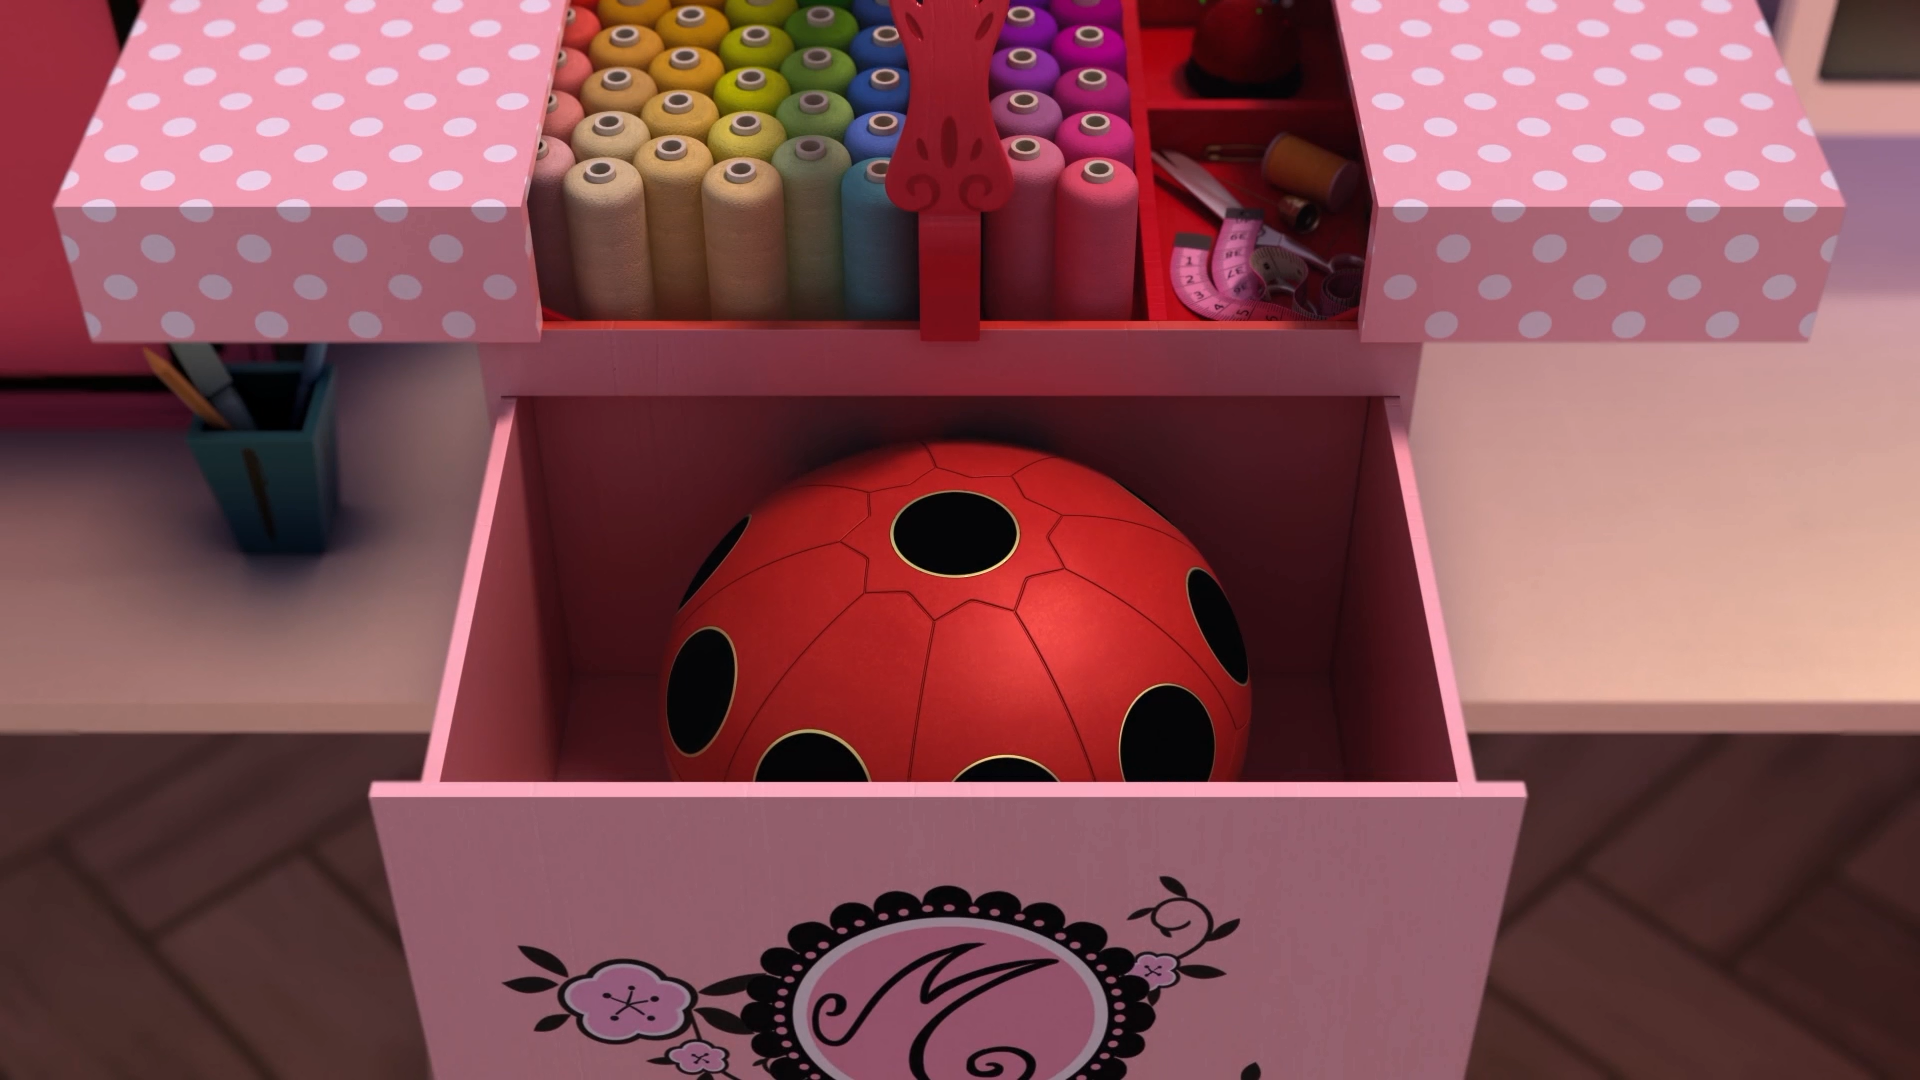 Chinese Miracle Box, Miraculous Ladybug Wiki, Fandom